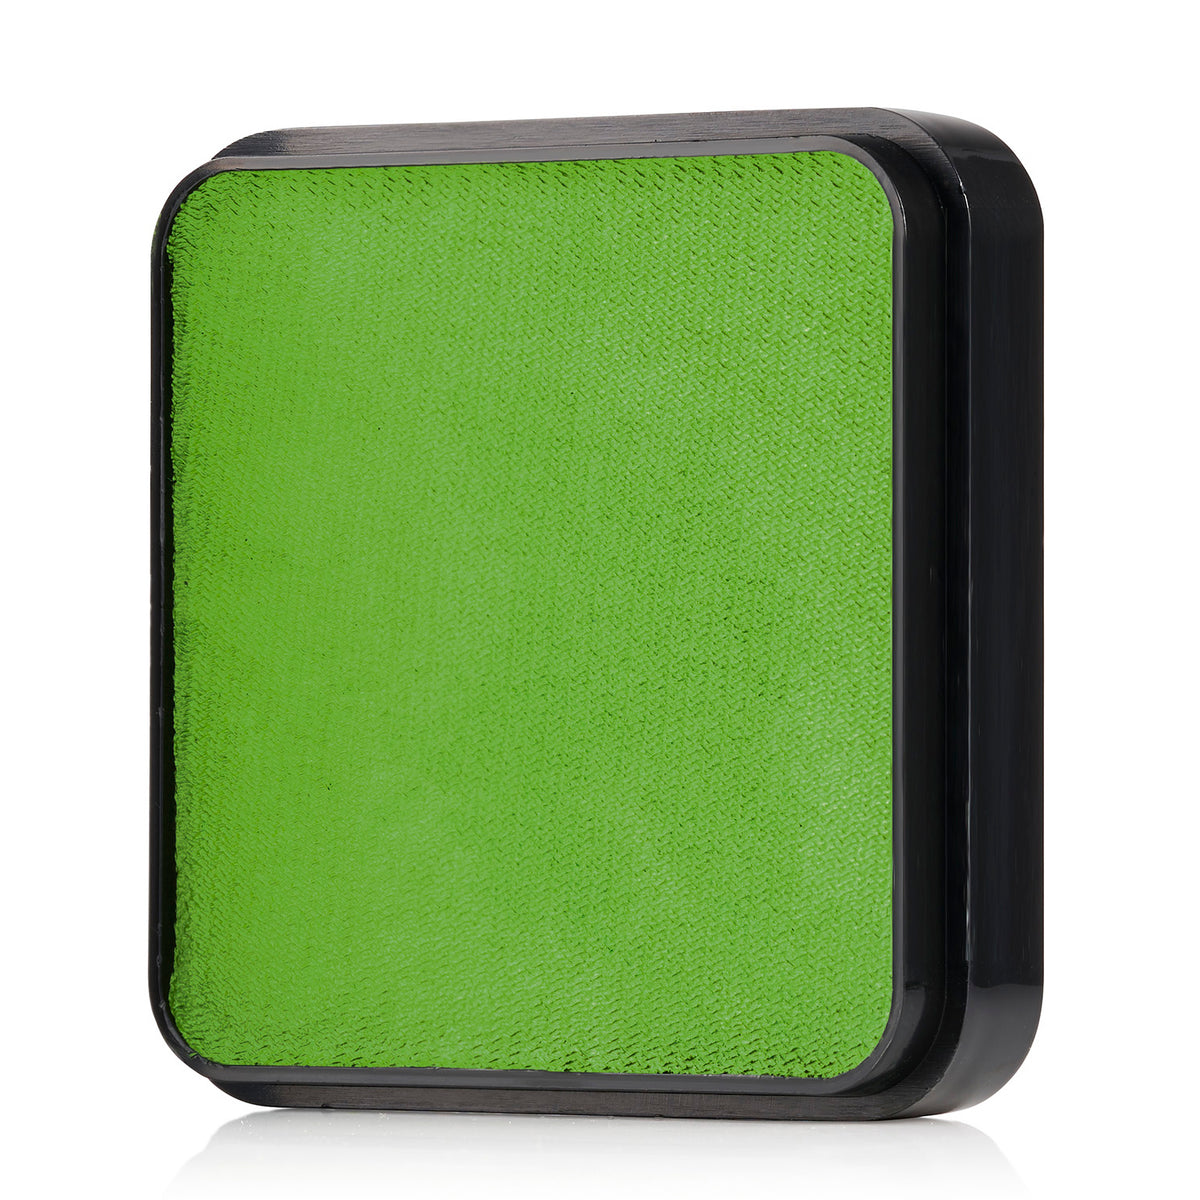 Kraze FX Face Paint - Lime Green (25 gm)